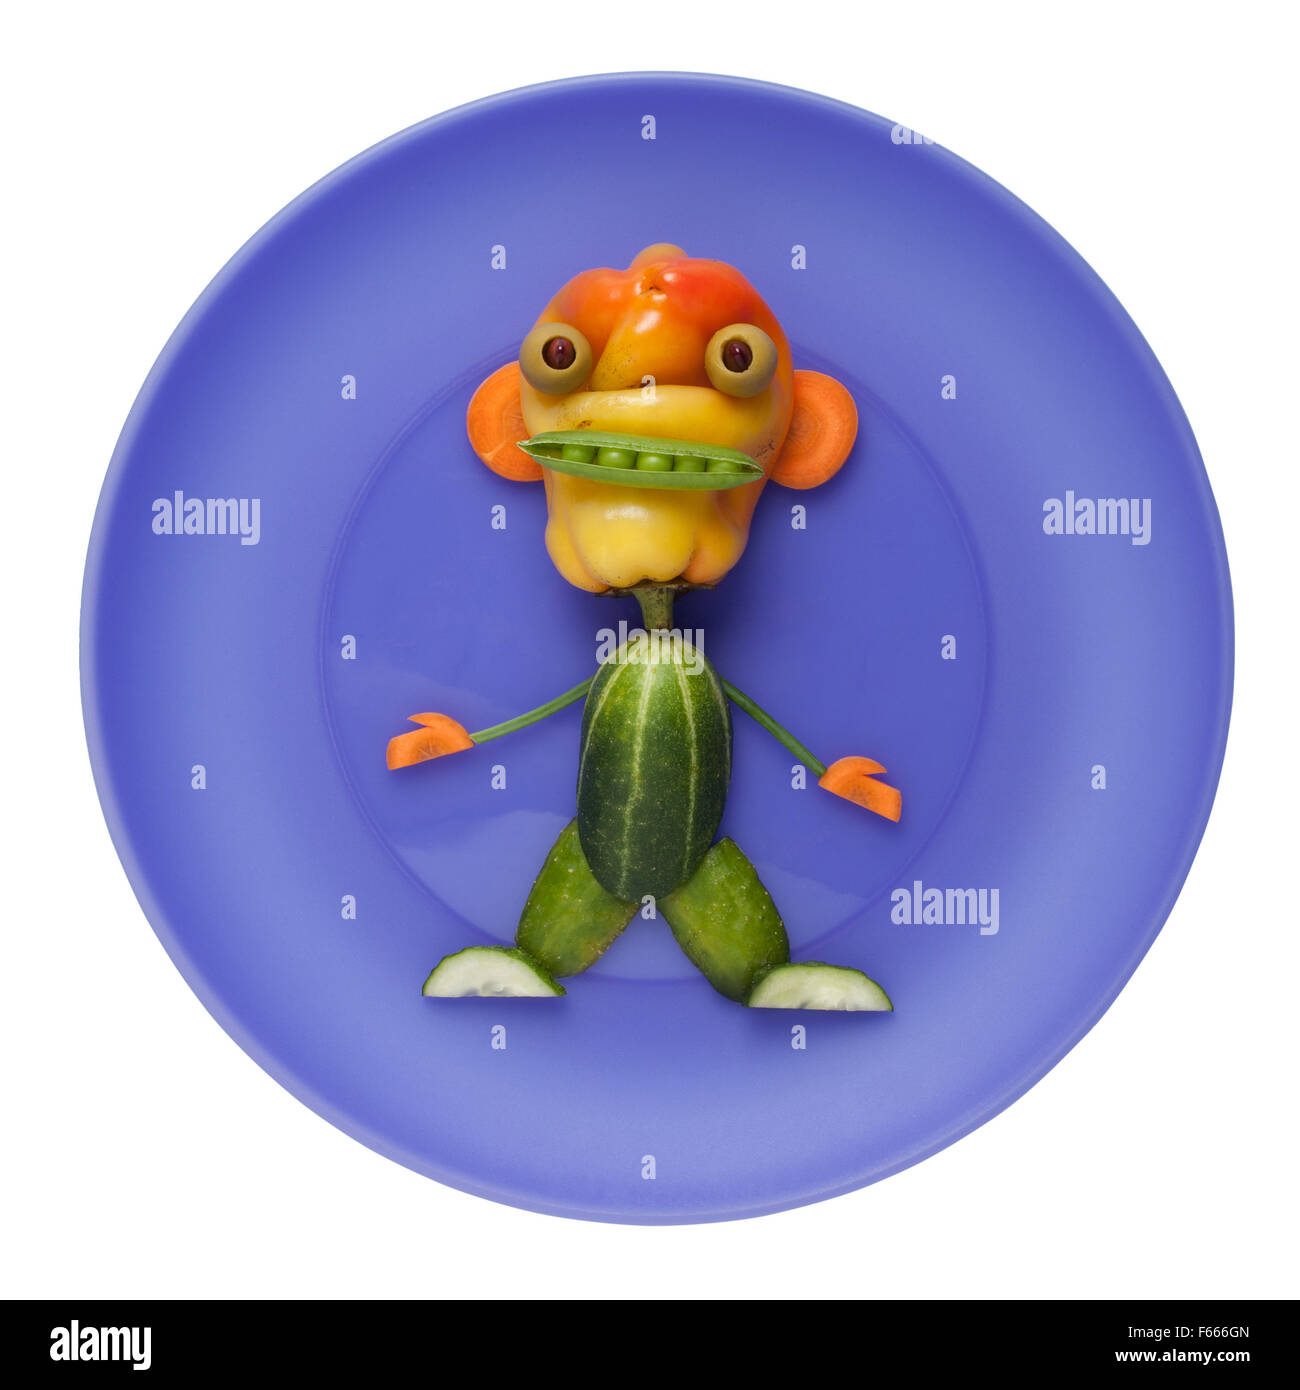 Funny monster légumes sur plaque bleue Banque D'Images